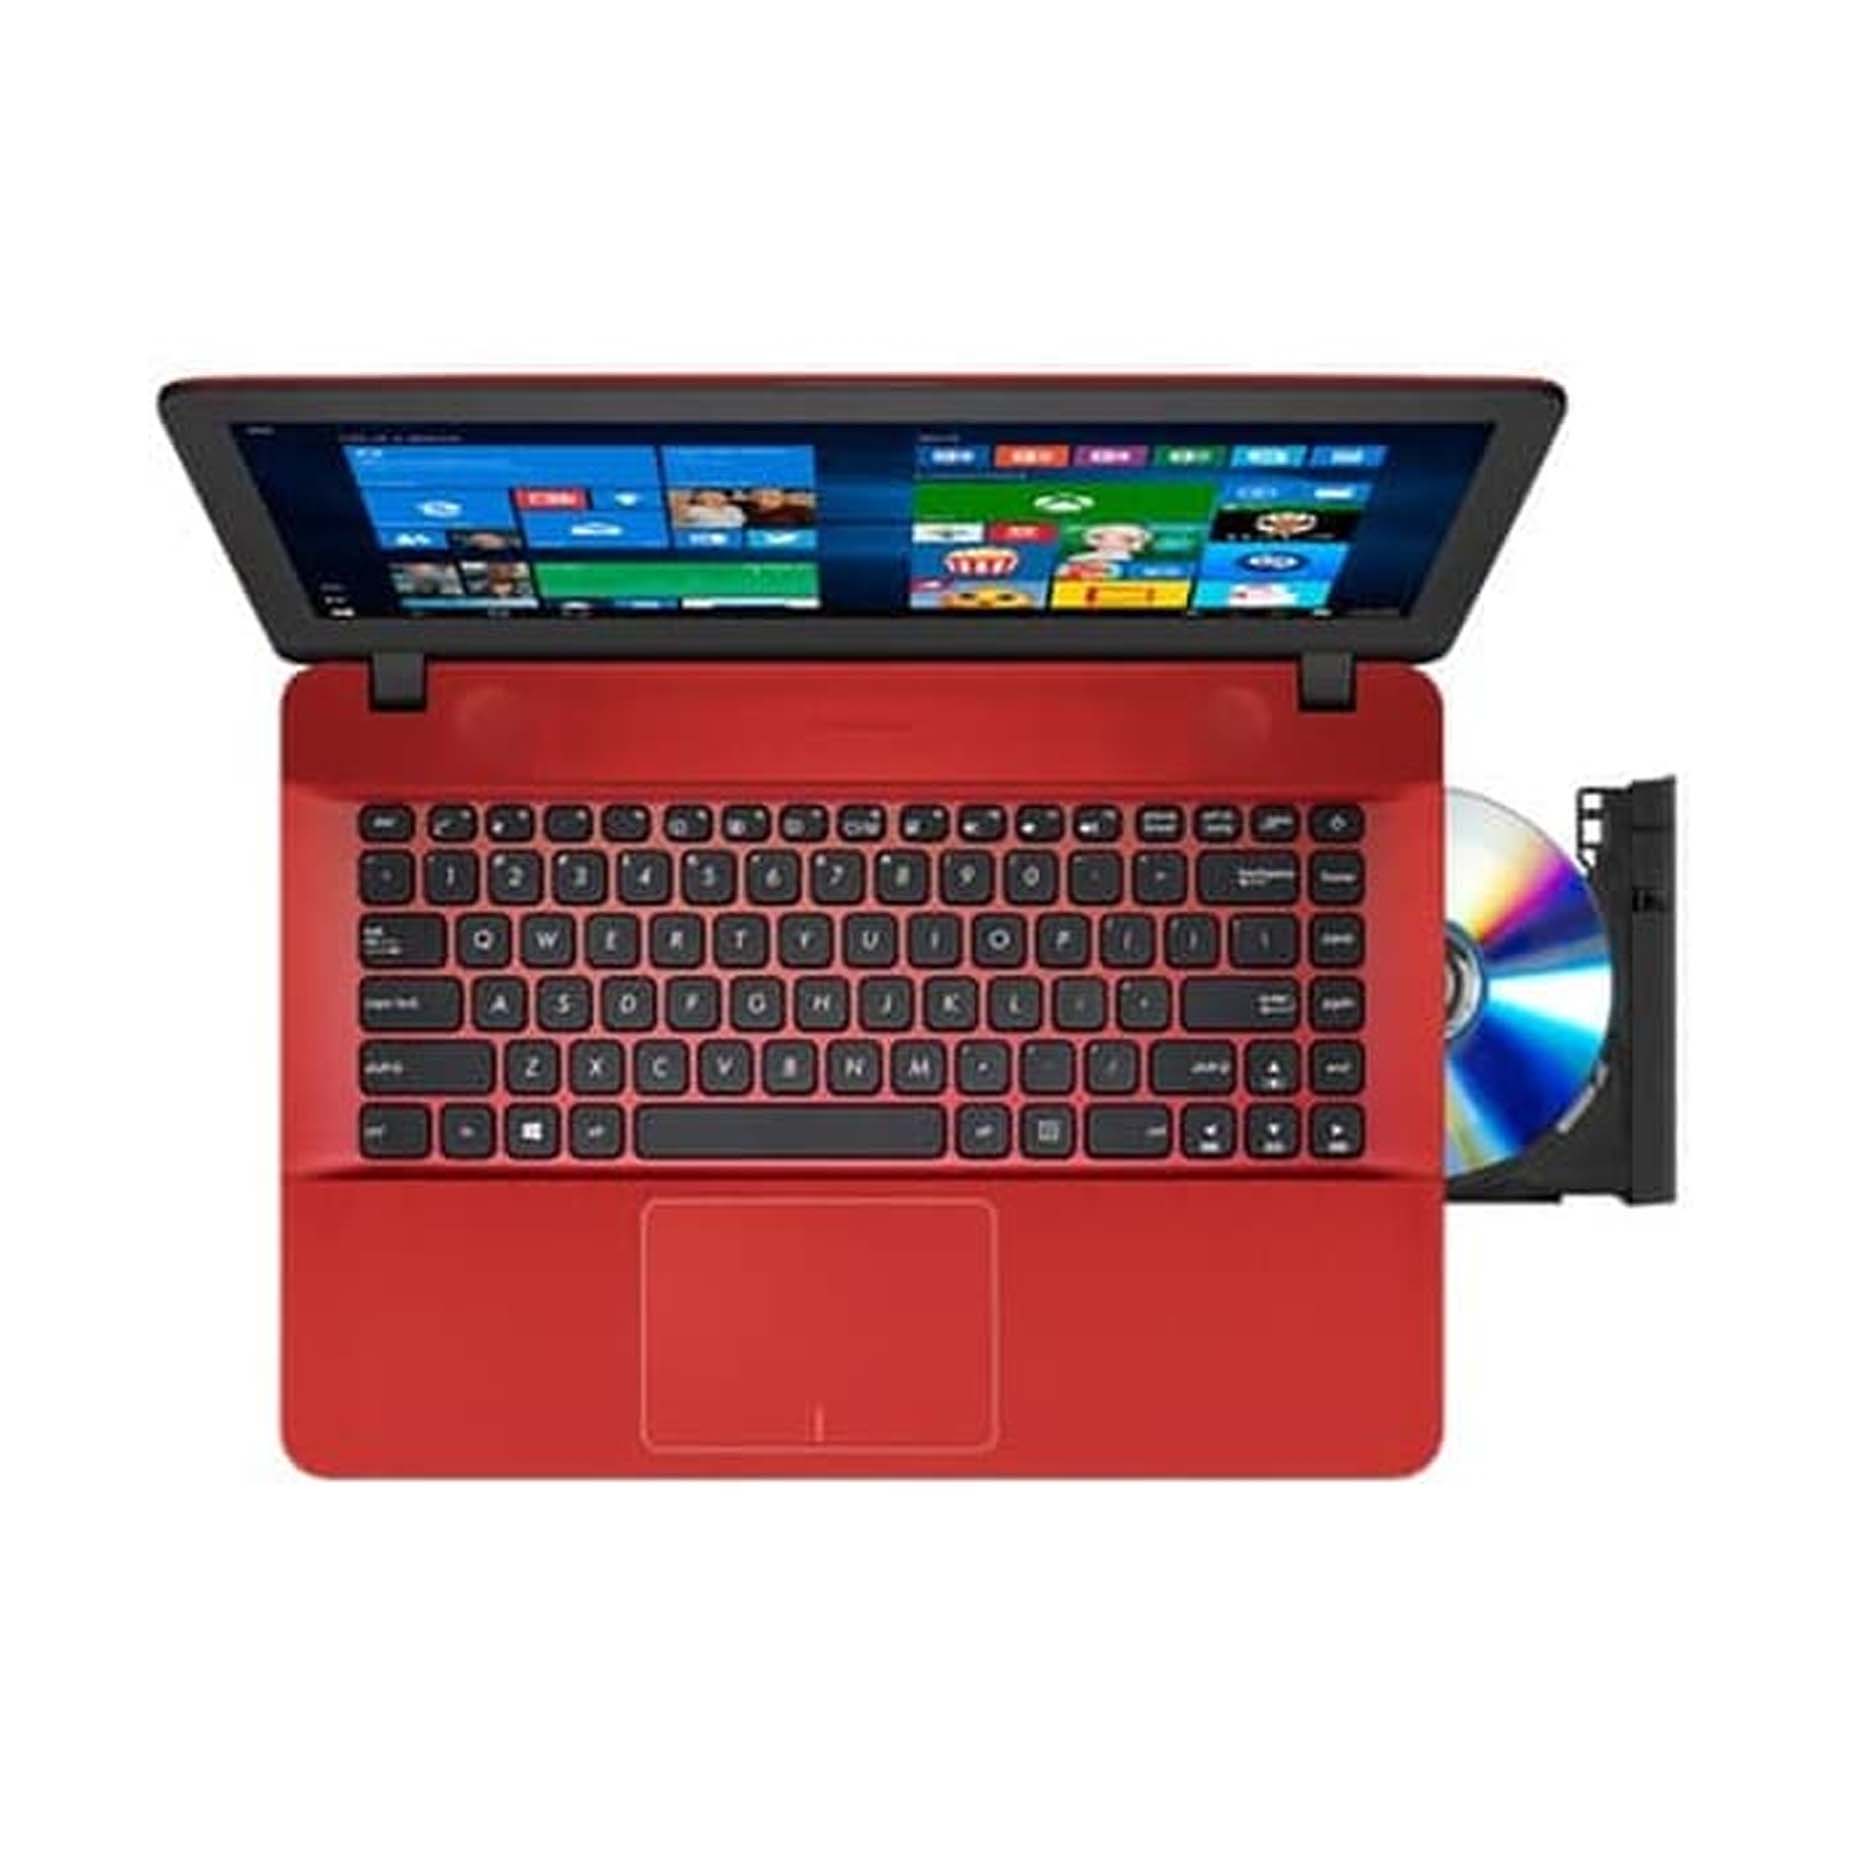 Harga Asus Notebook X441MA-GA013T Red Intel Celeron N4000 4GB 1TB 14 inch Win 10